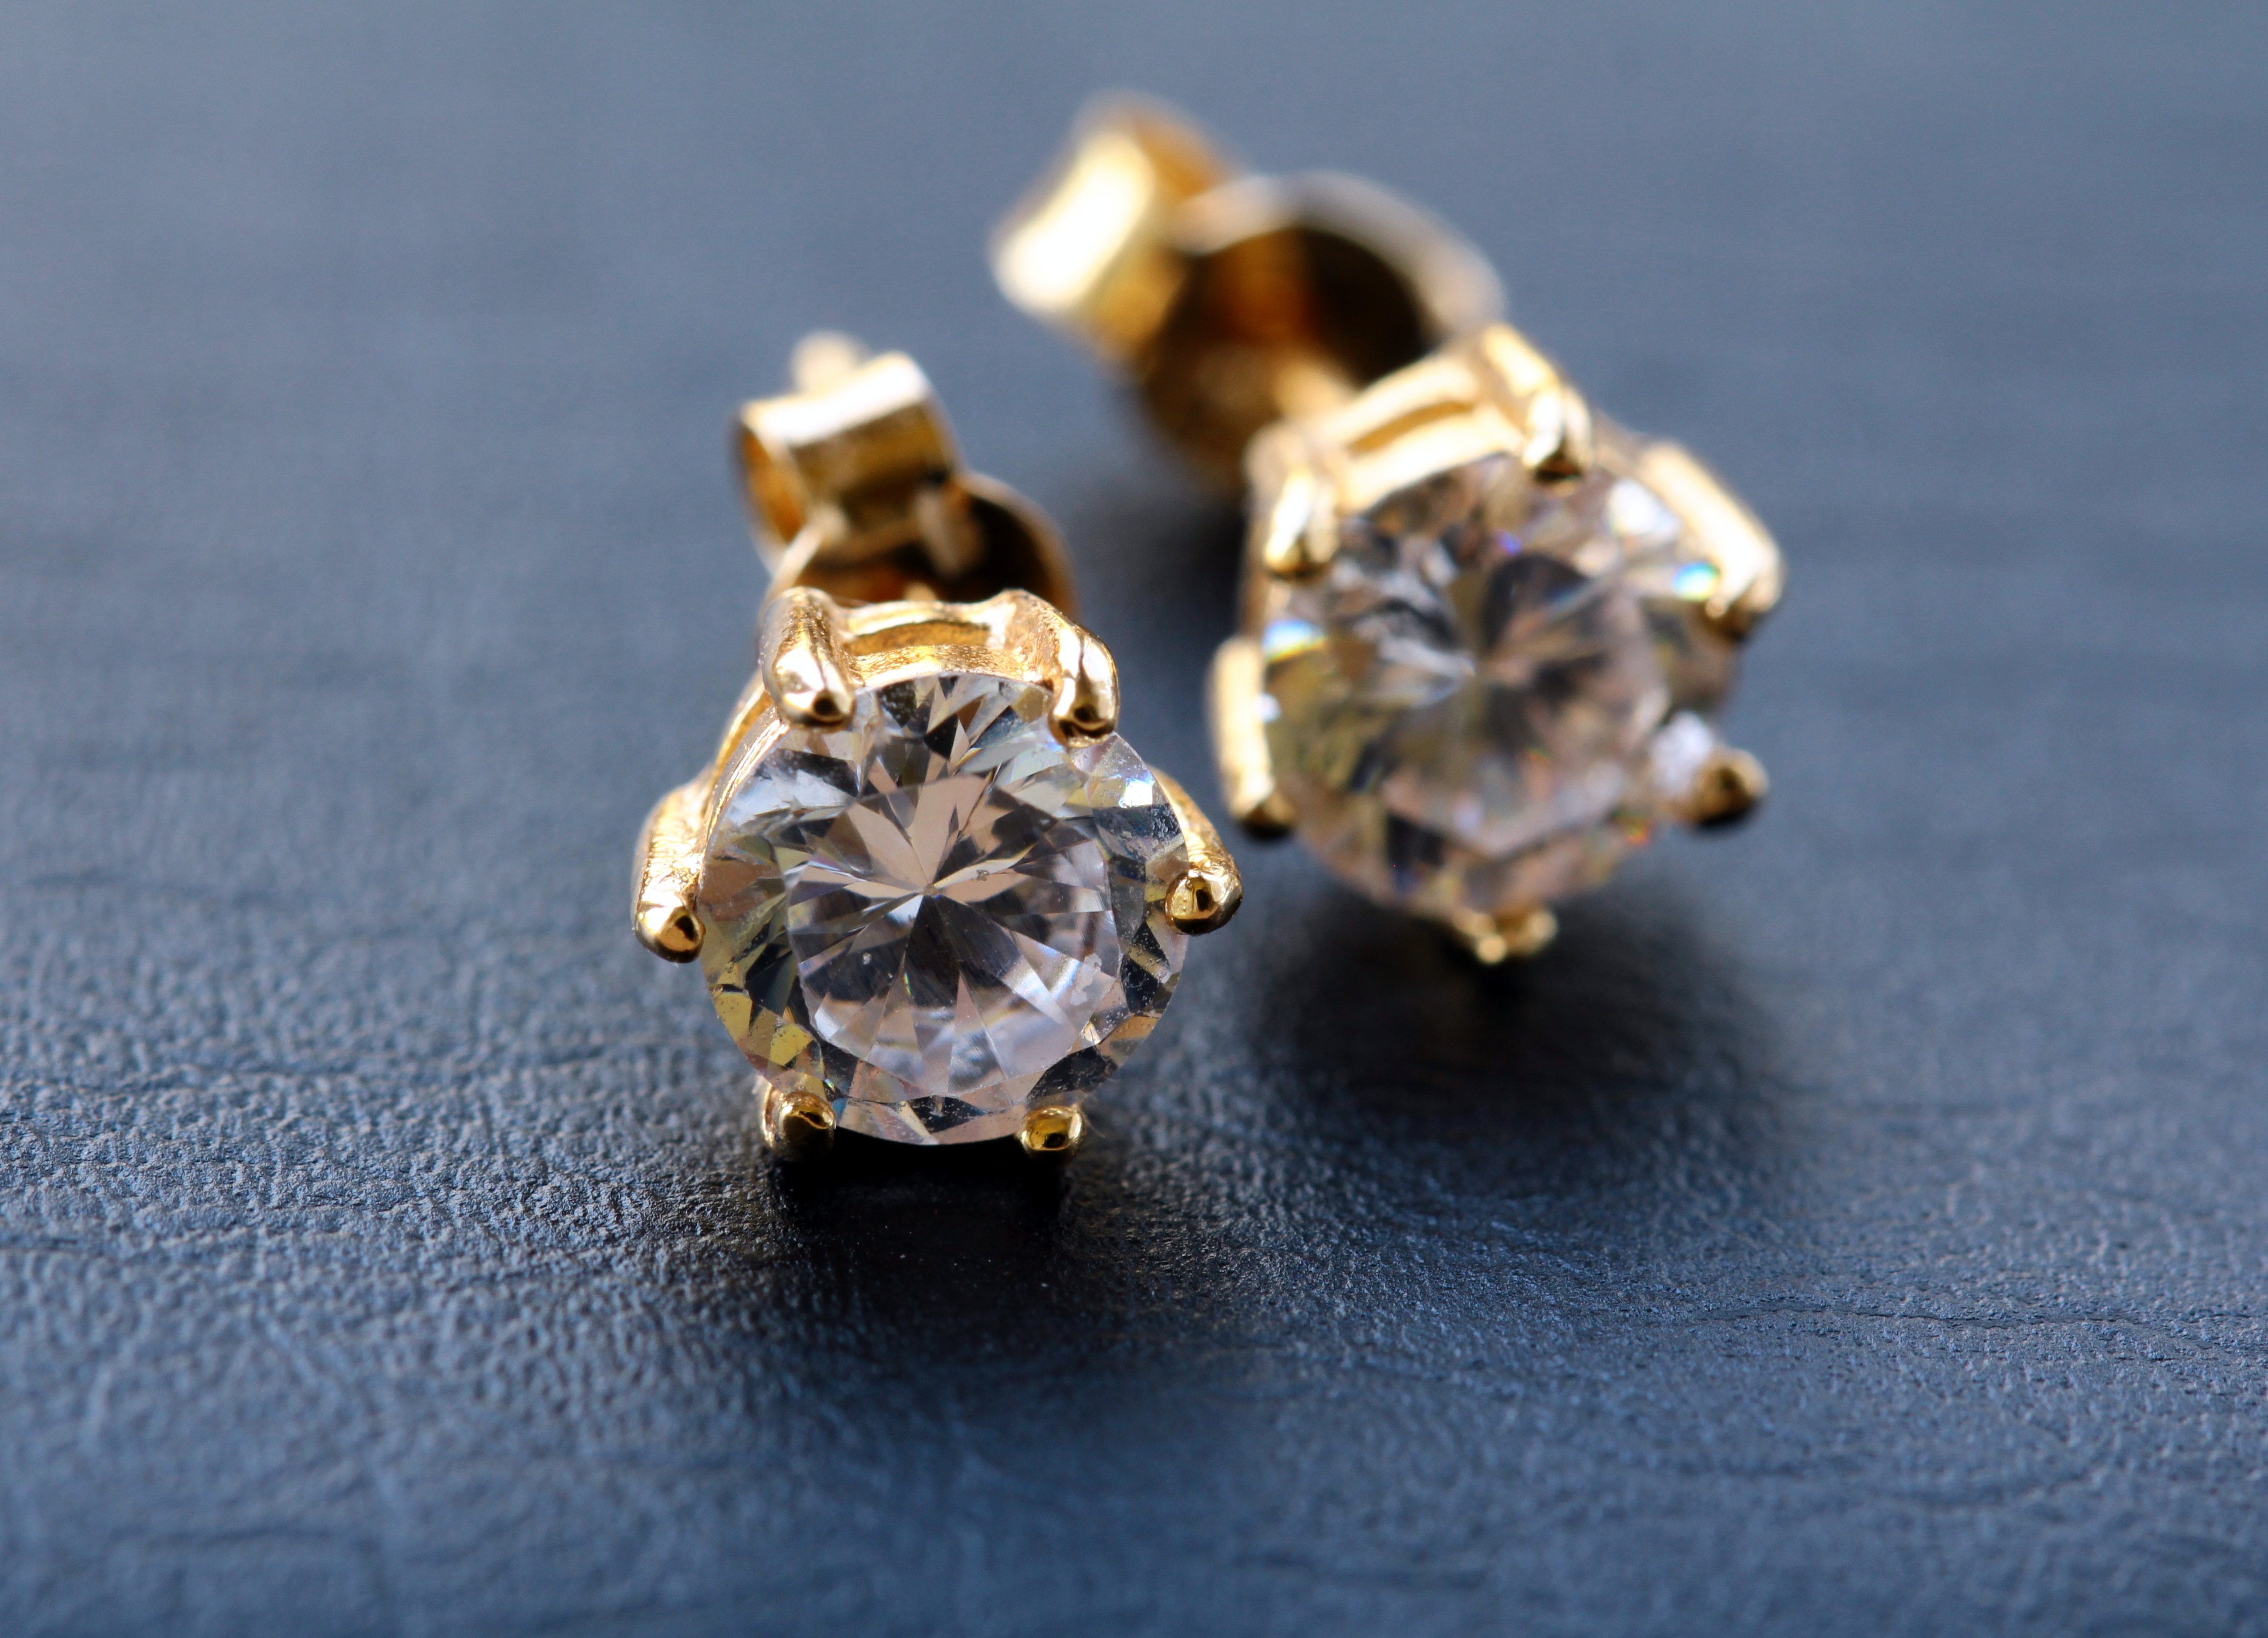 Zarcillos de oro y diamantes. | Foto: Shutterstock